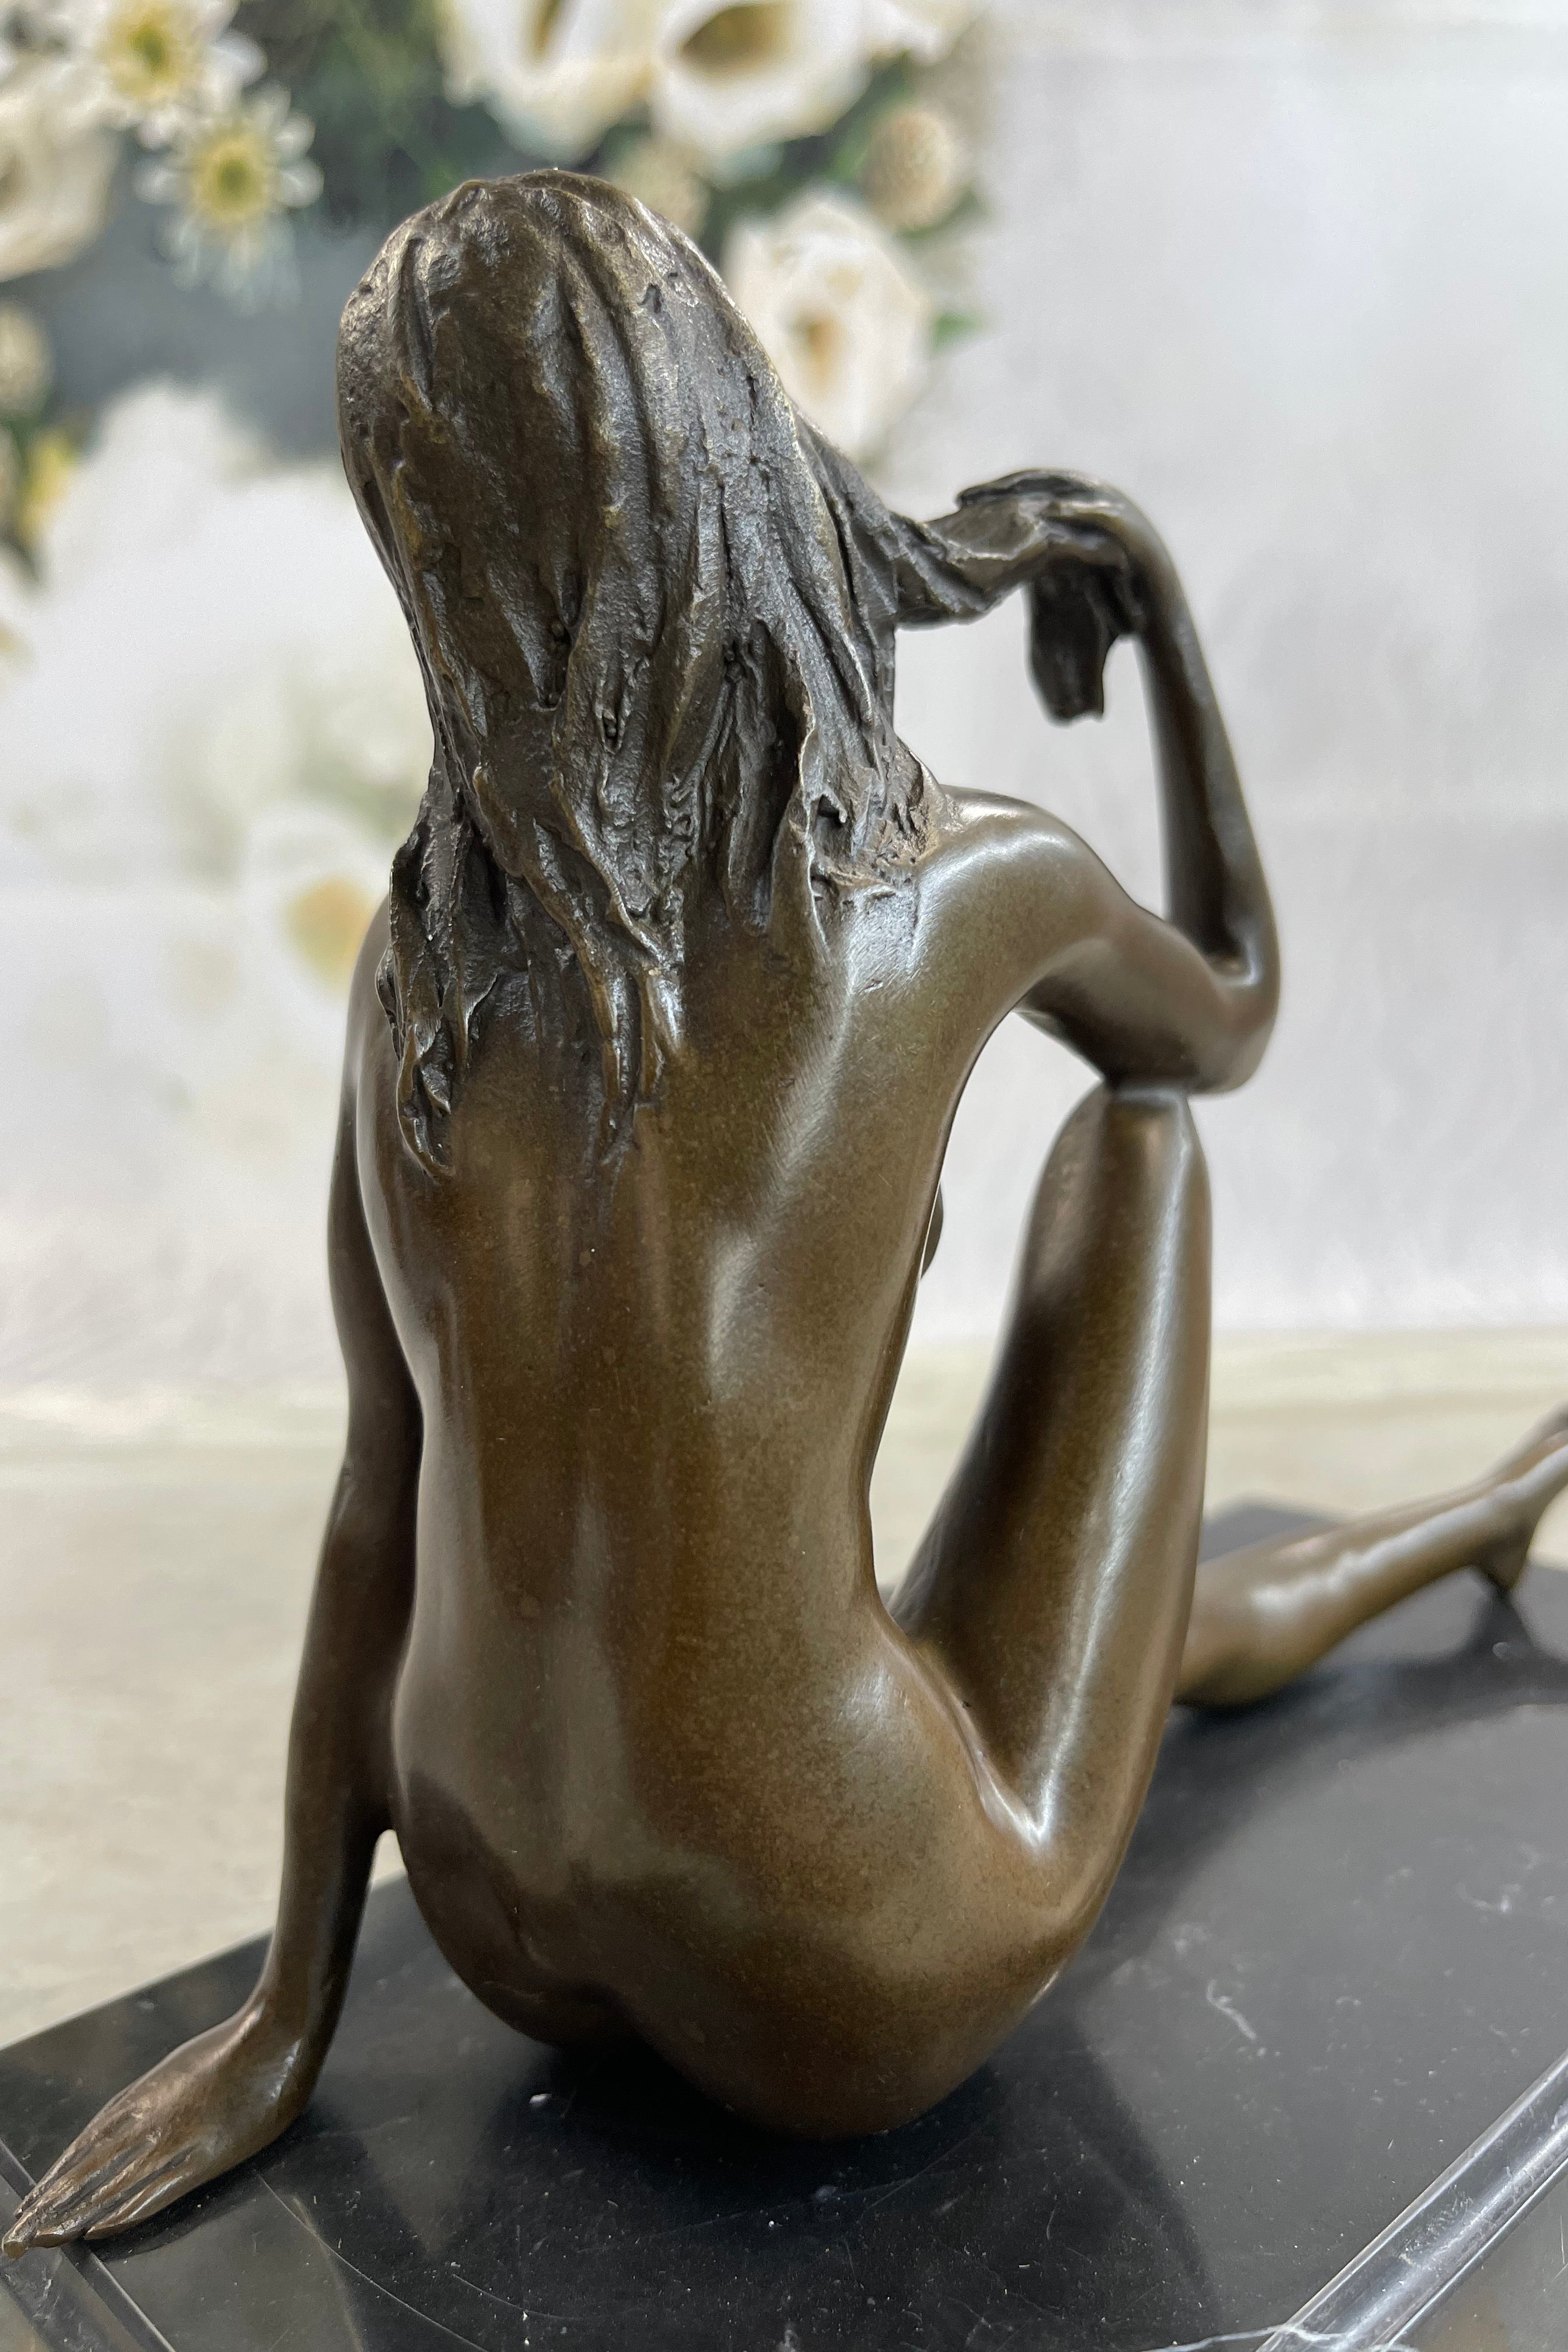 Art Deco Nude Temptress Bronze Sculpture Hot Cast Marble Base Figurine Figure